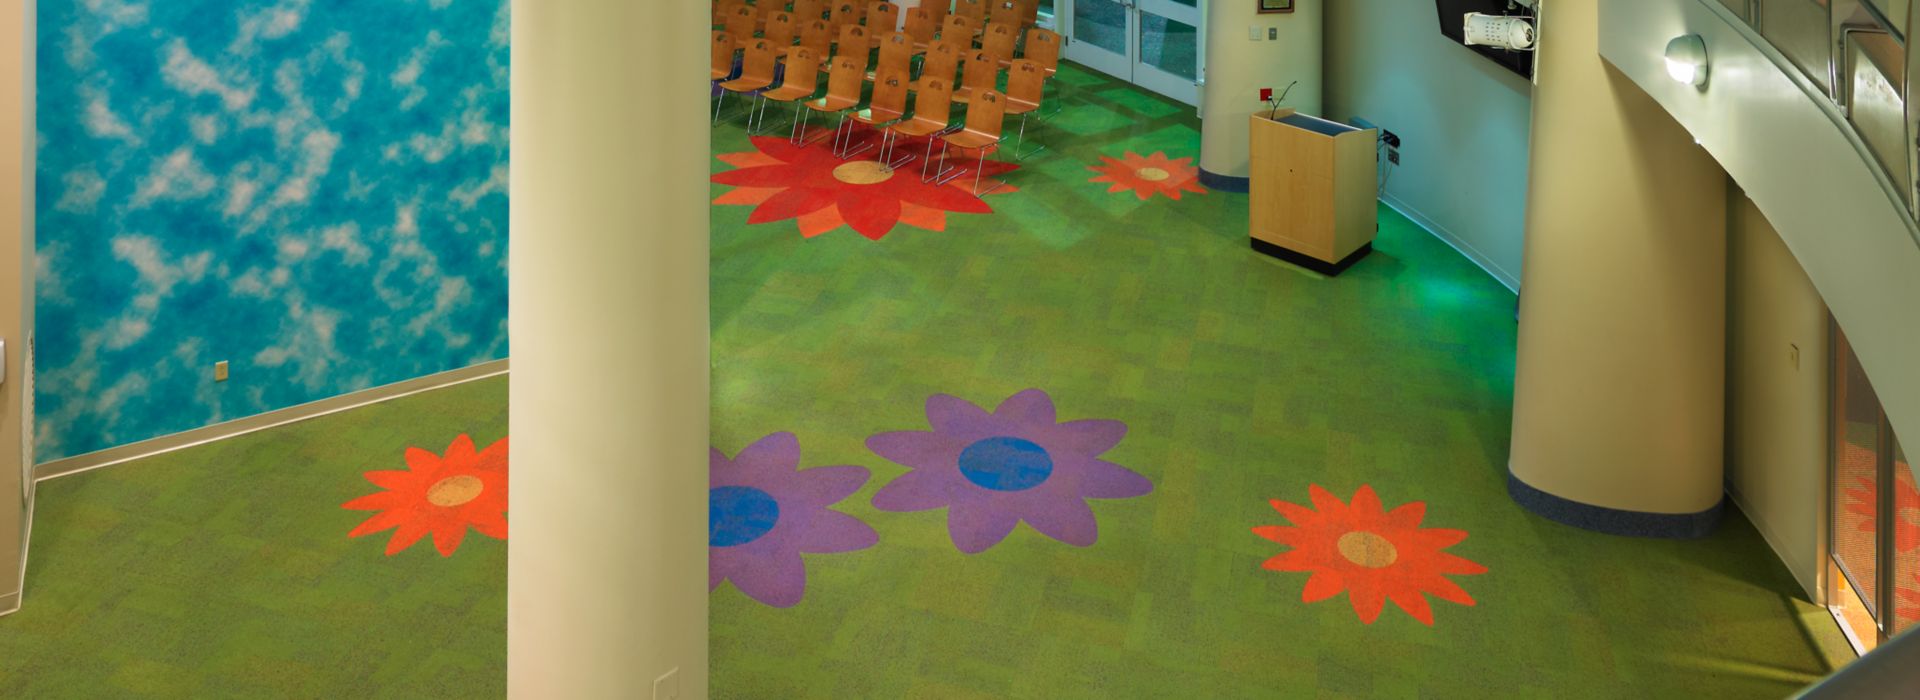 Interface Cubic Colours carpet tile cut into flower shapes